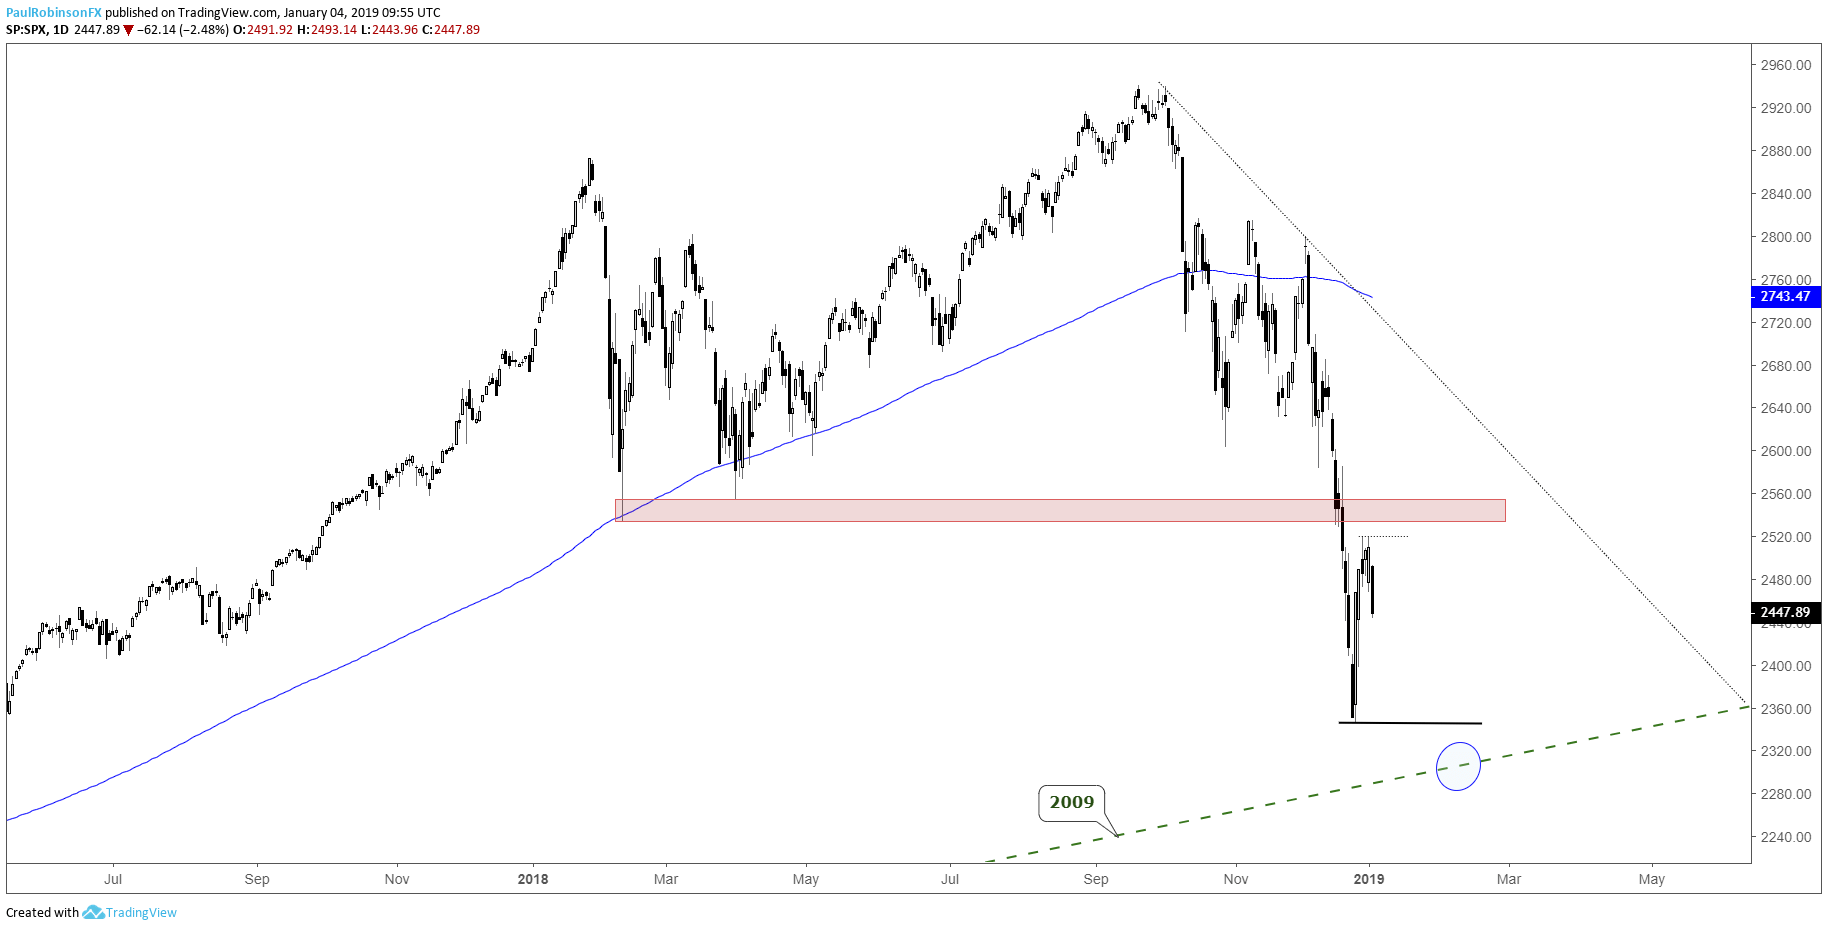 2009 Dow Jones Chart